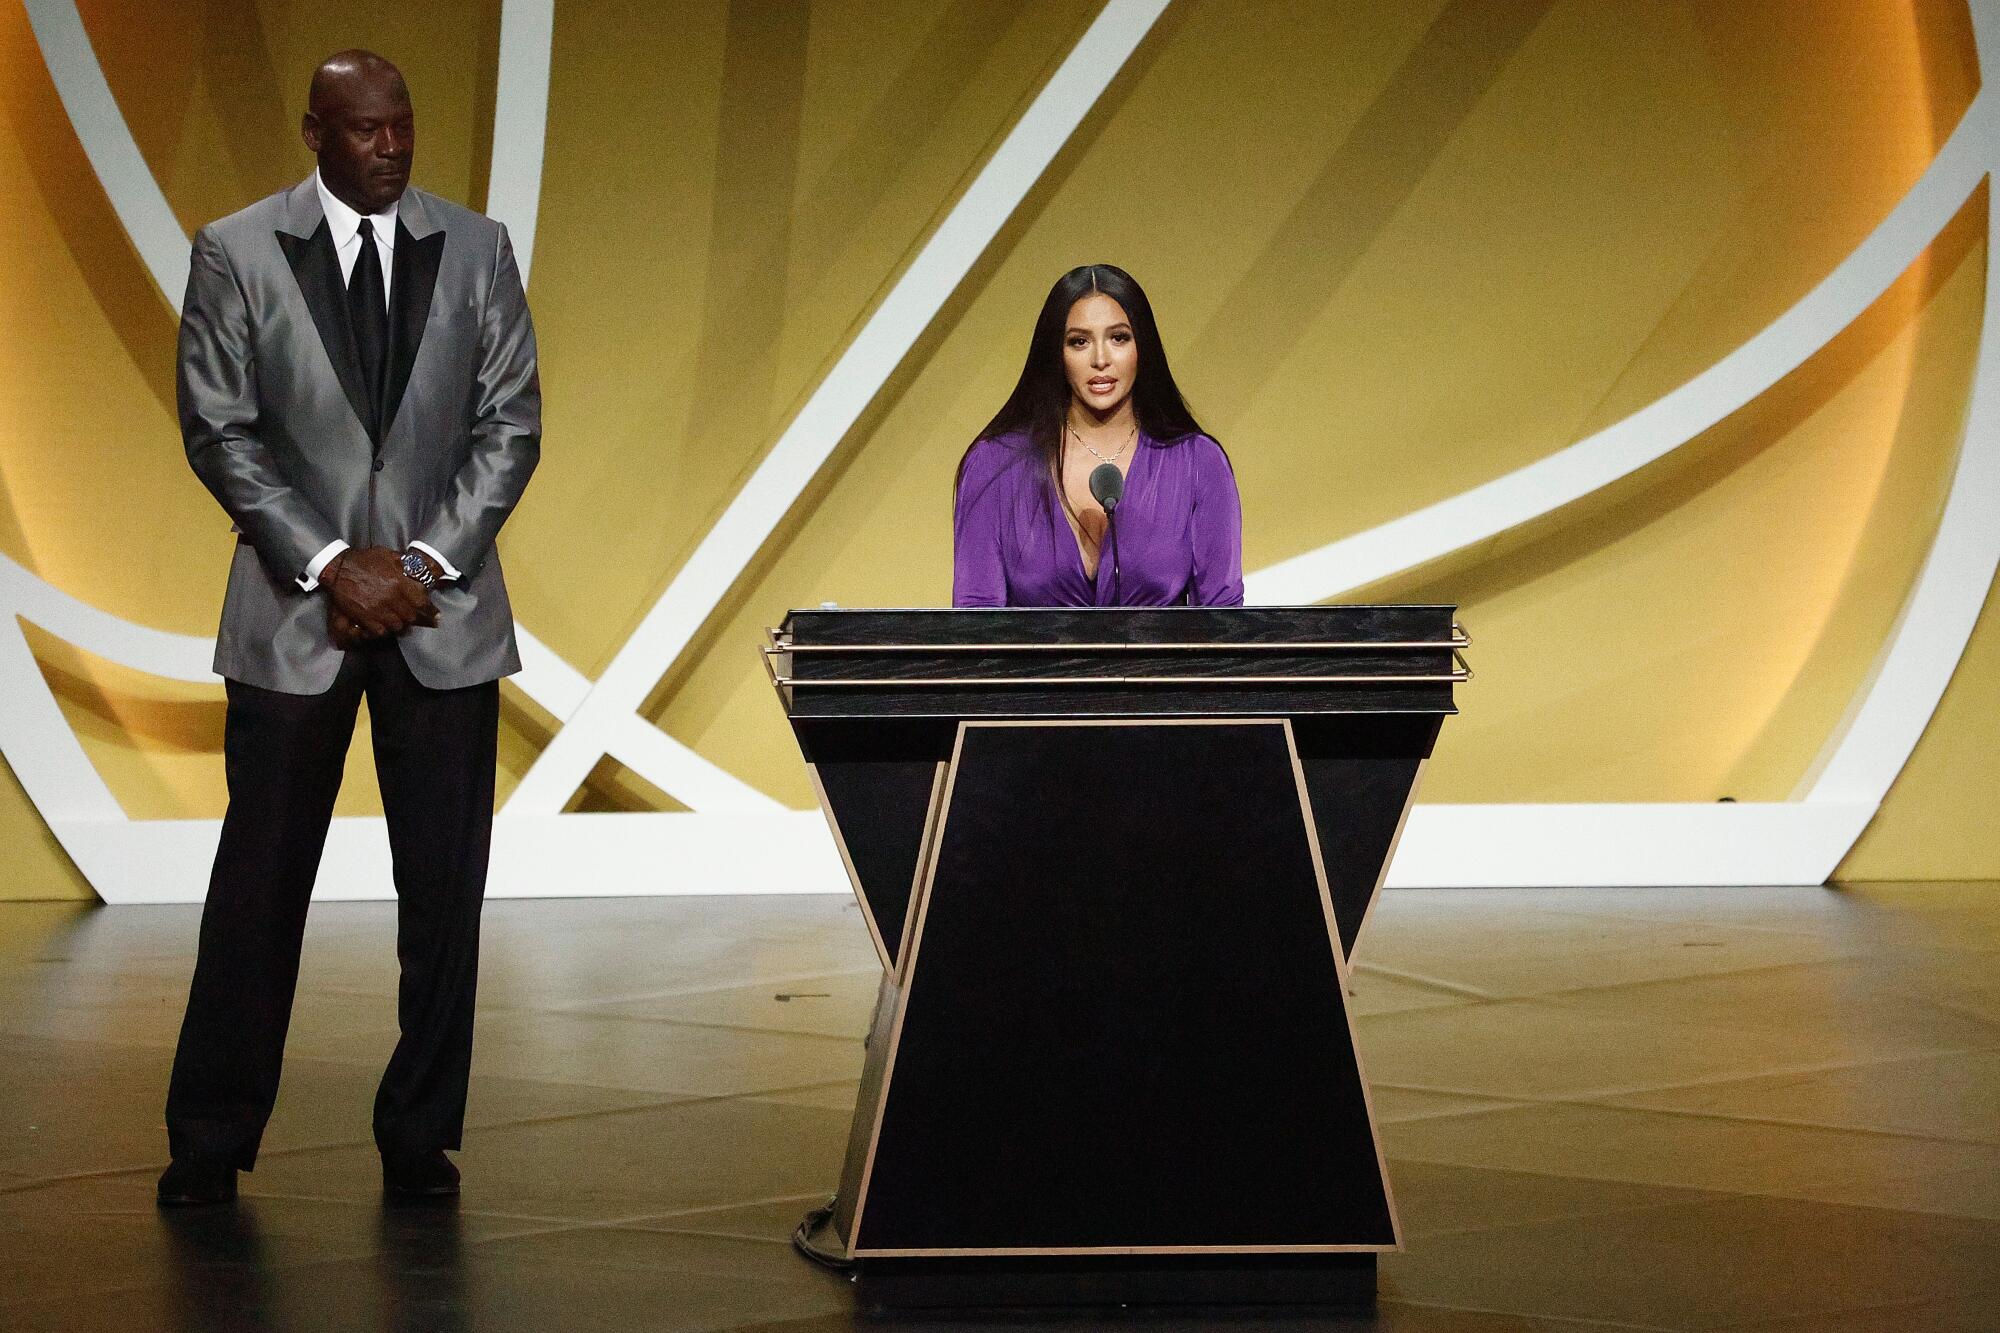 Vanessa Bryant speaks on behalf of her late husband Kobe Bryant alongside presenter Michael Jordan.